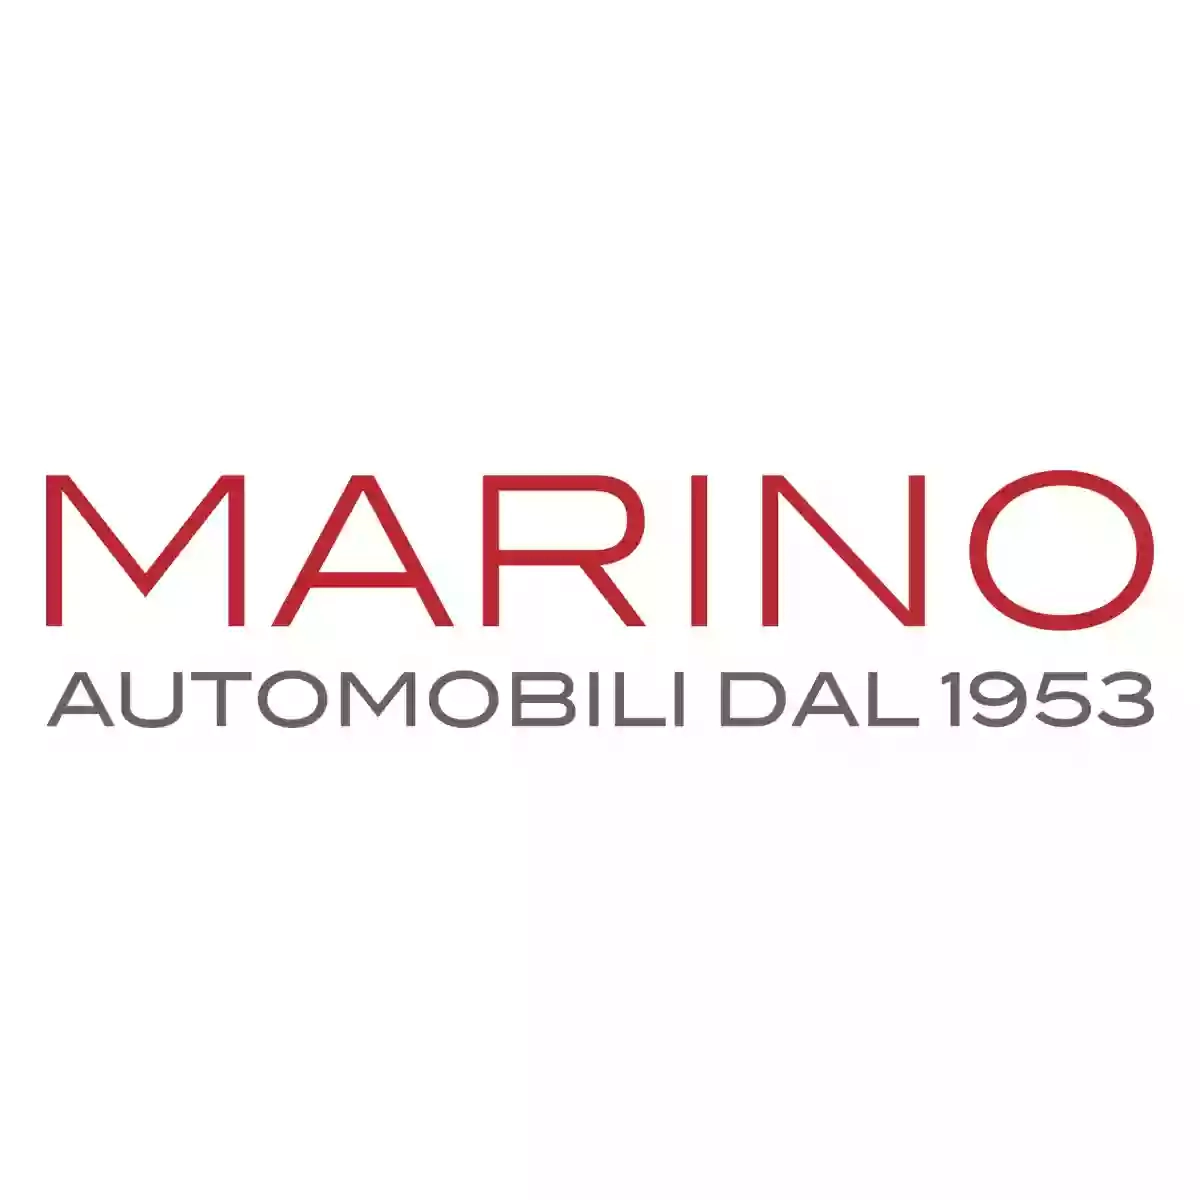 Marino Automobili (Bari viale Zippitelli) - Auto Usate e Km0 - Minicar Aixam, concessionaria ufficiale